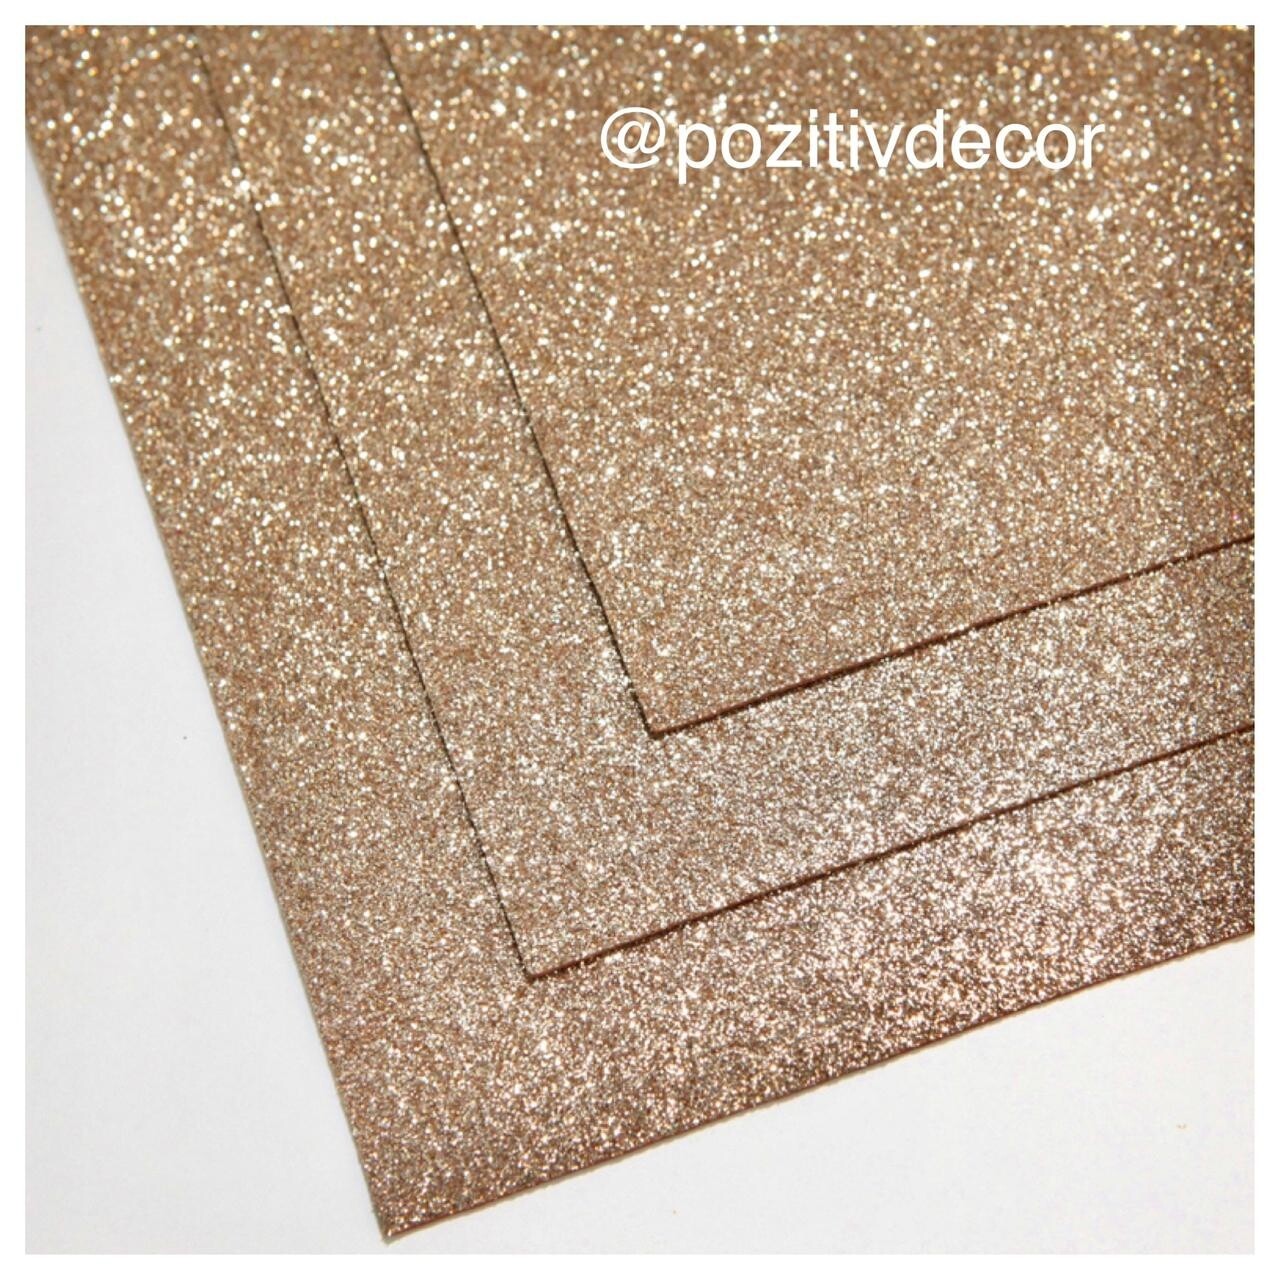 Фоамиран глиттерный - толщина 1,5 мм , размер листа 60/70 см.
Цвет - песочное золото